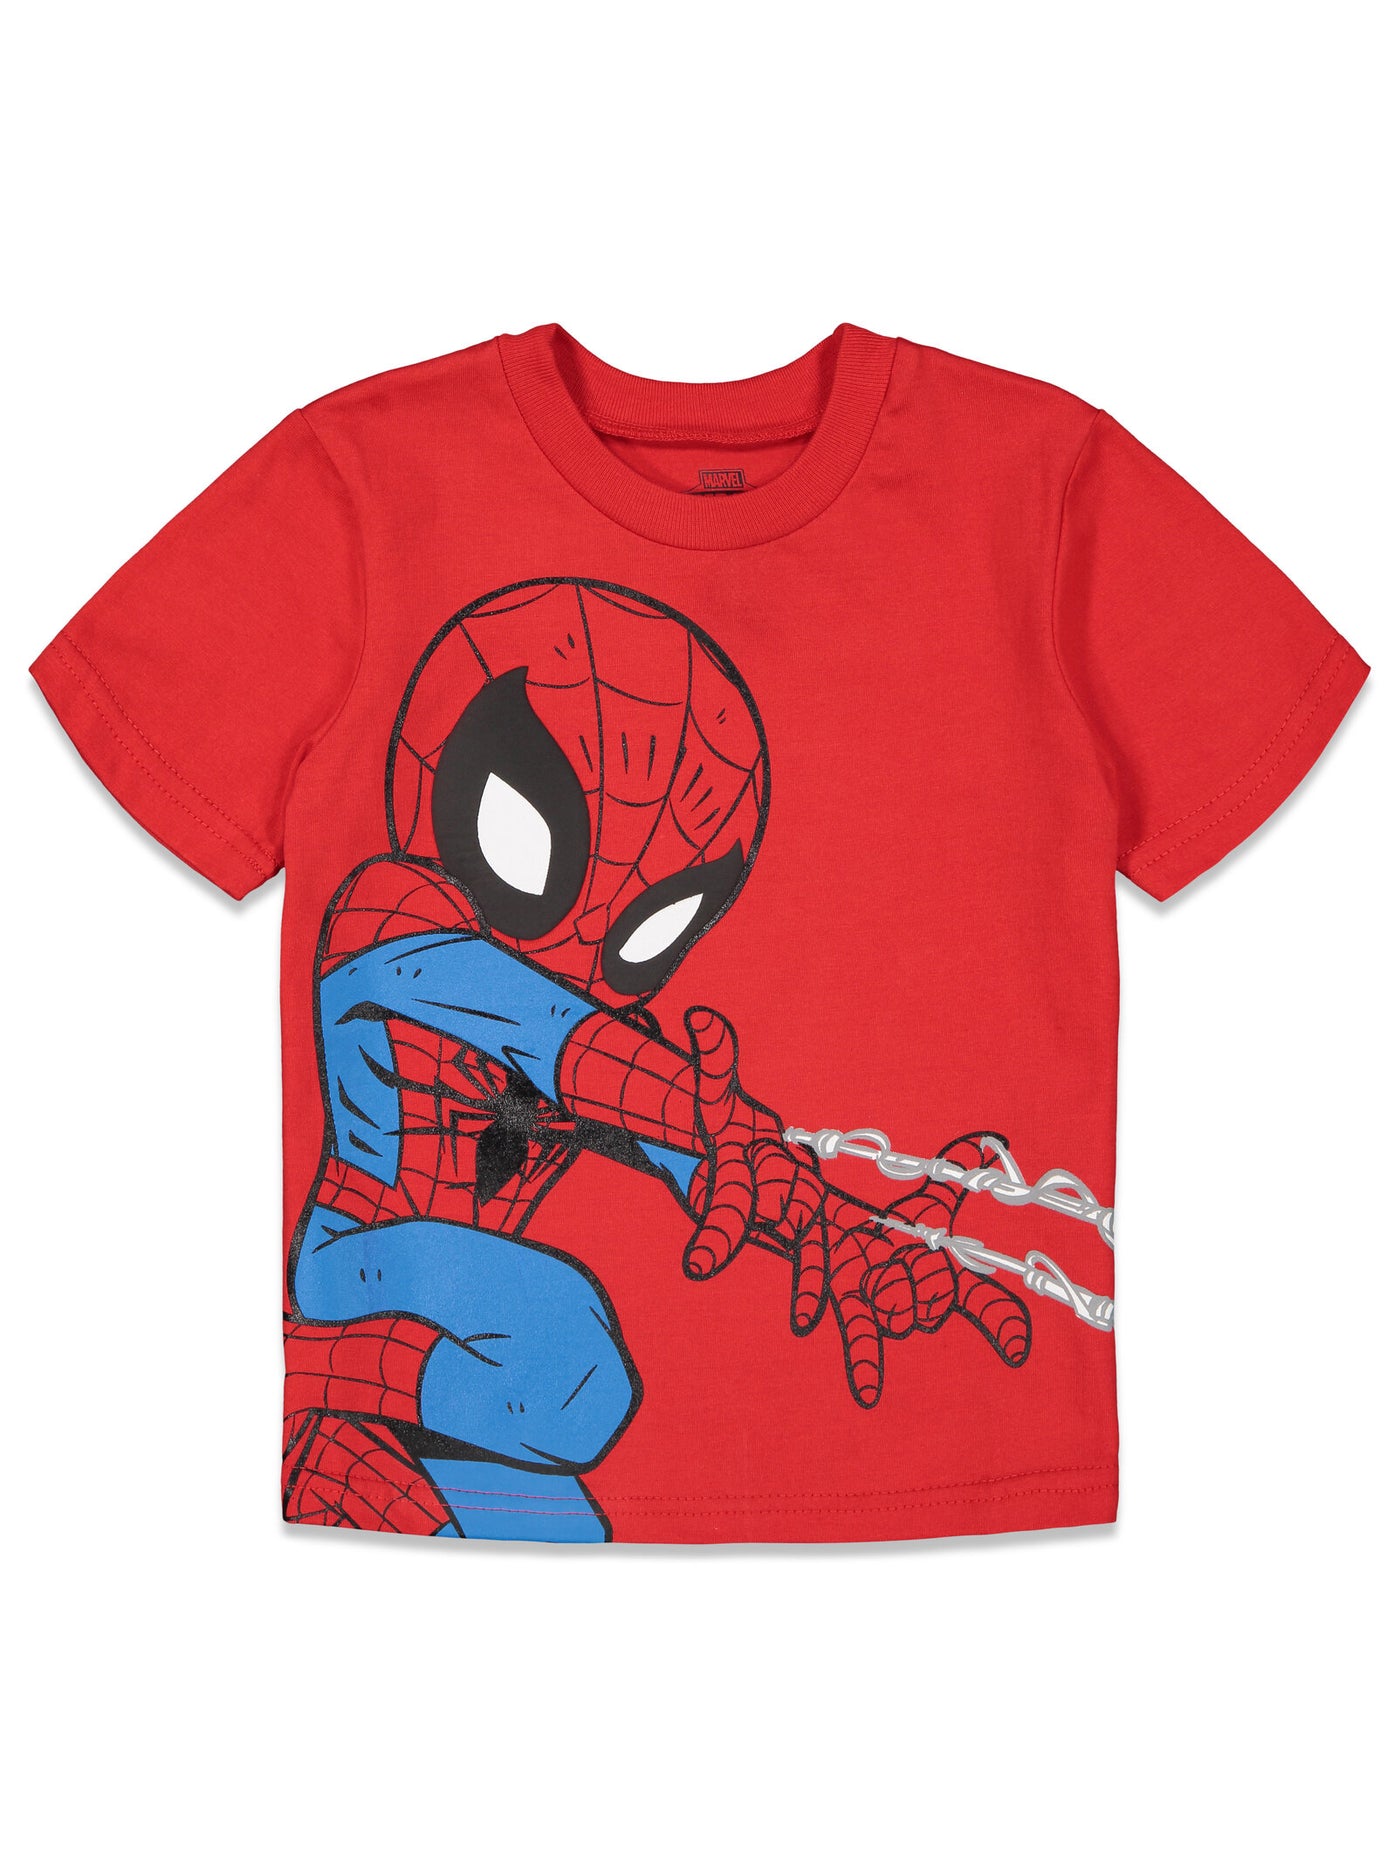 Marvel Avengers Spider-Man paquete de 4 camisetas gráficas